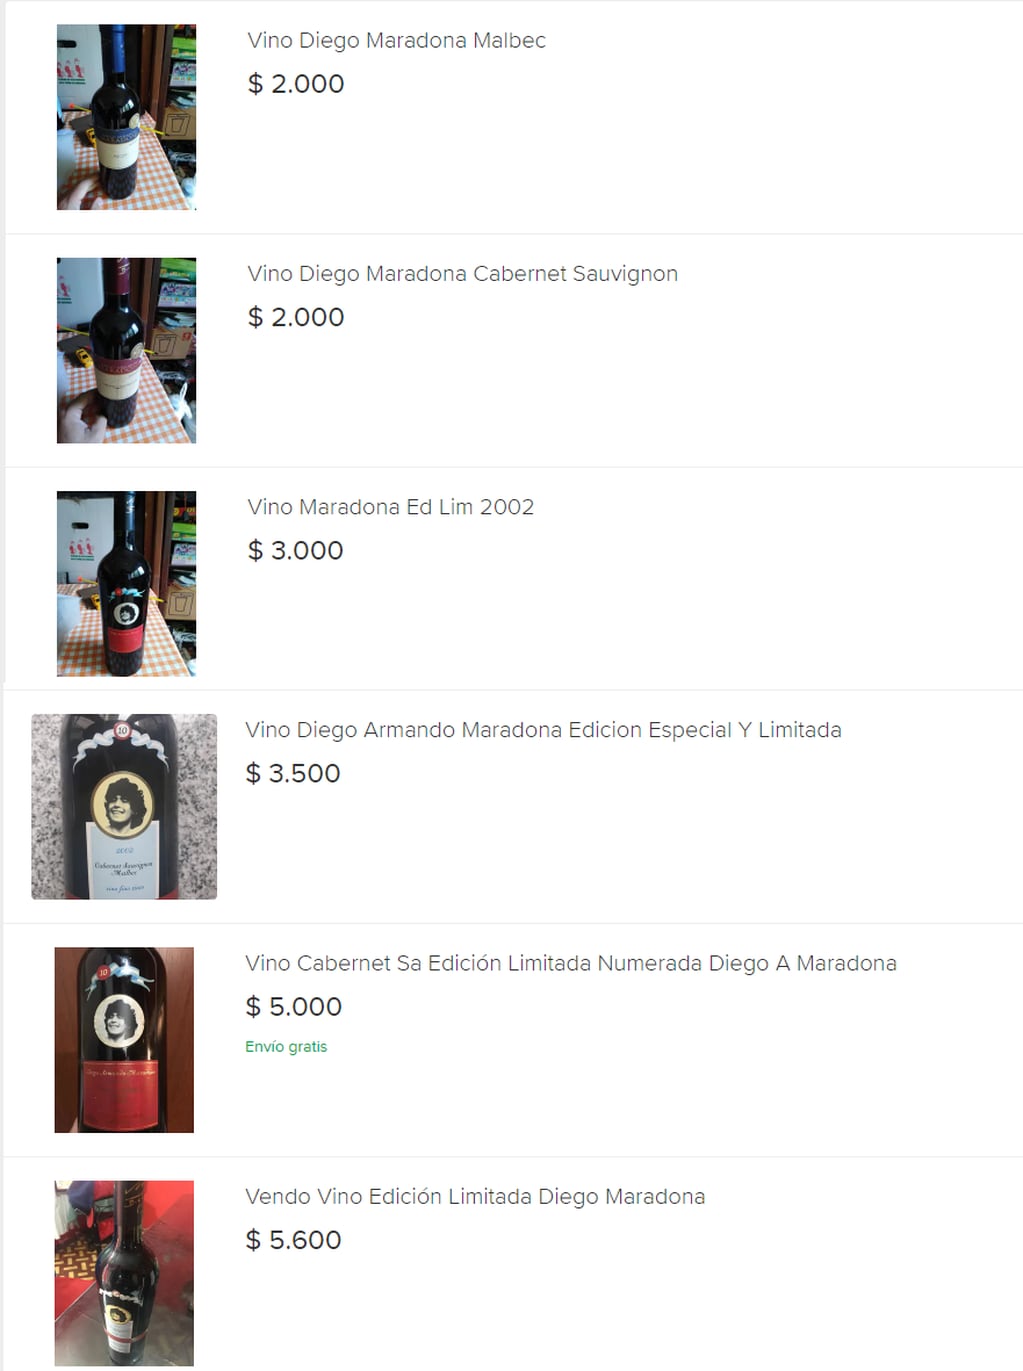 Desde $2.000 y por encima de los $5.000 se puede conseguir el vino de Maradona. - Captura de pantalla